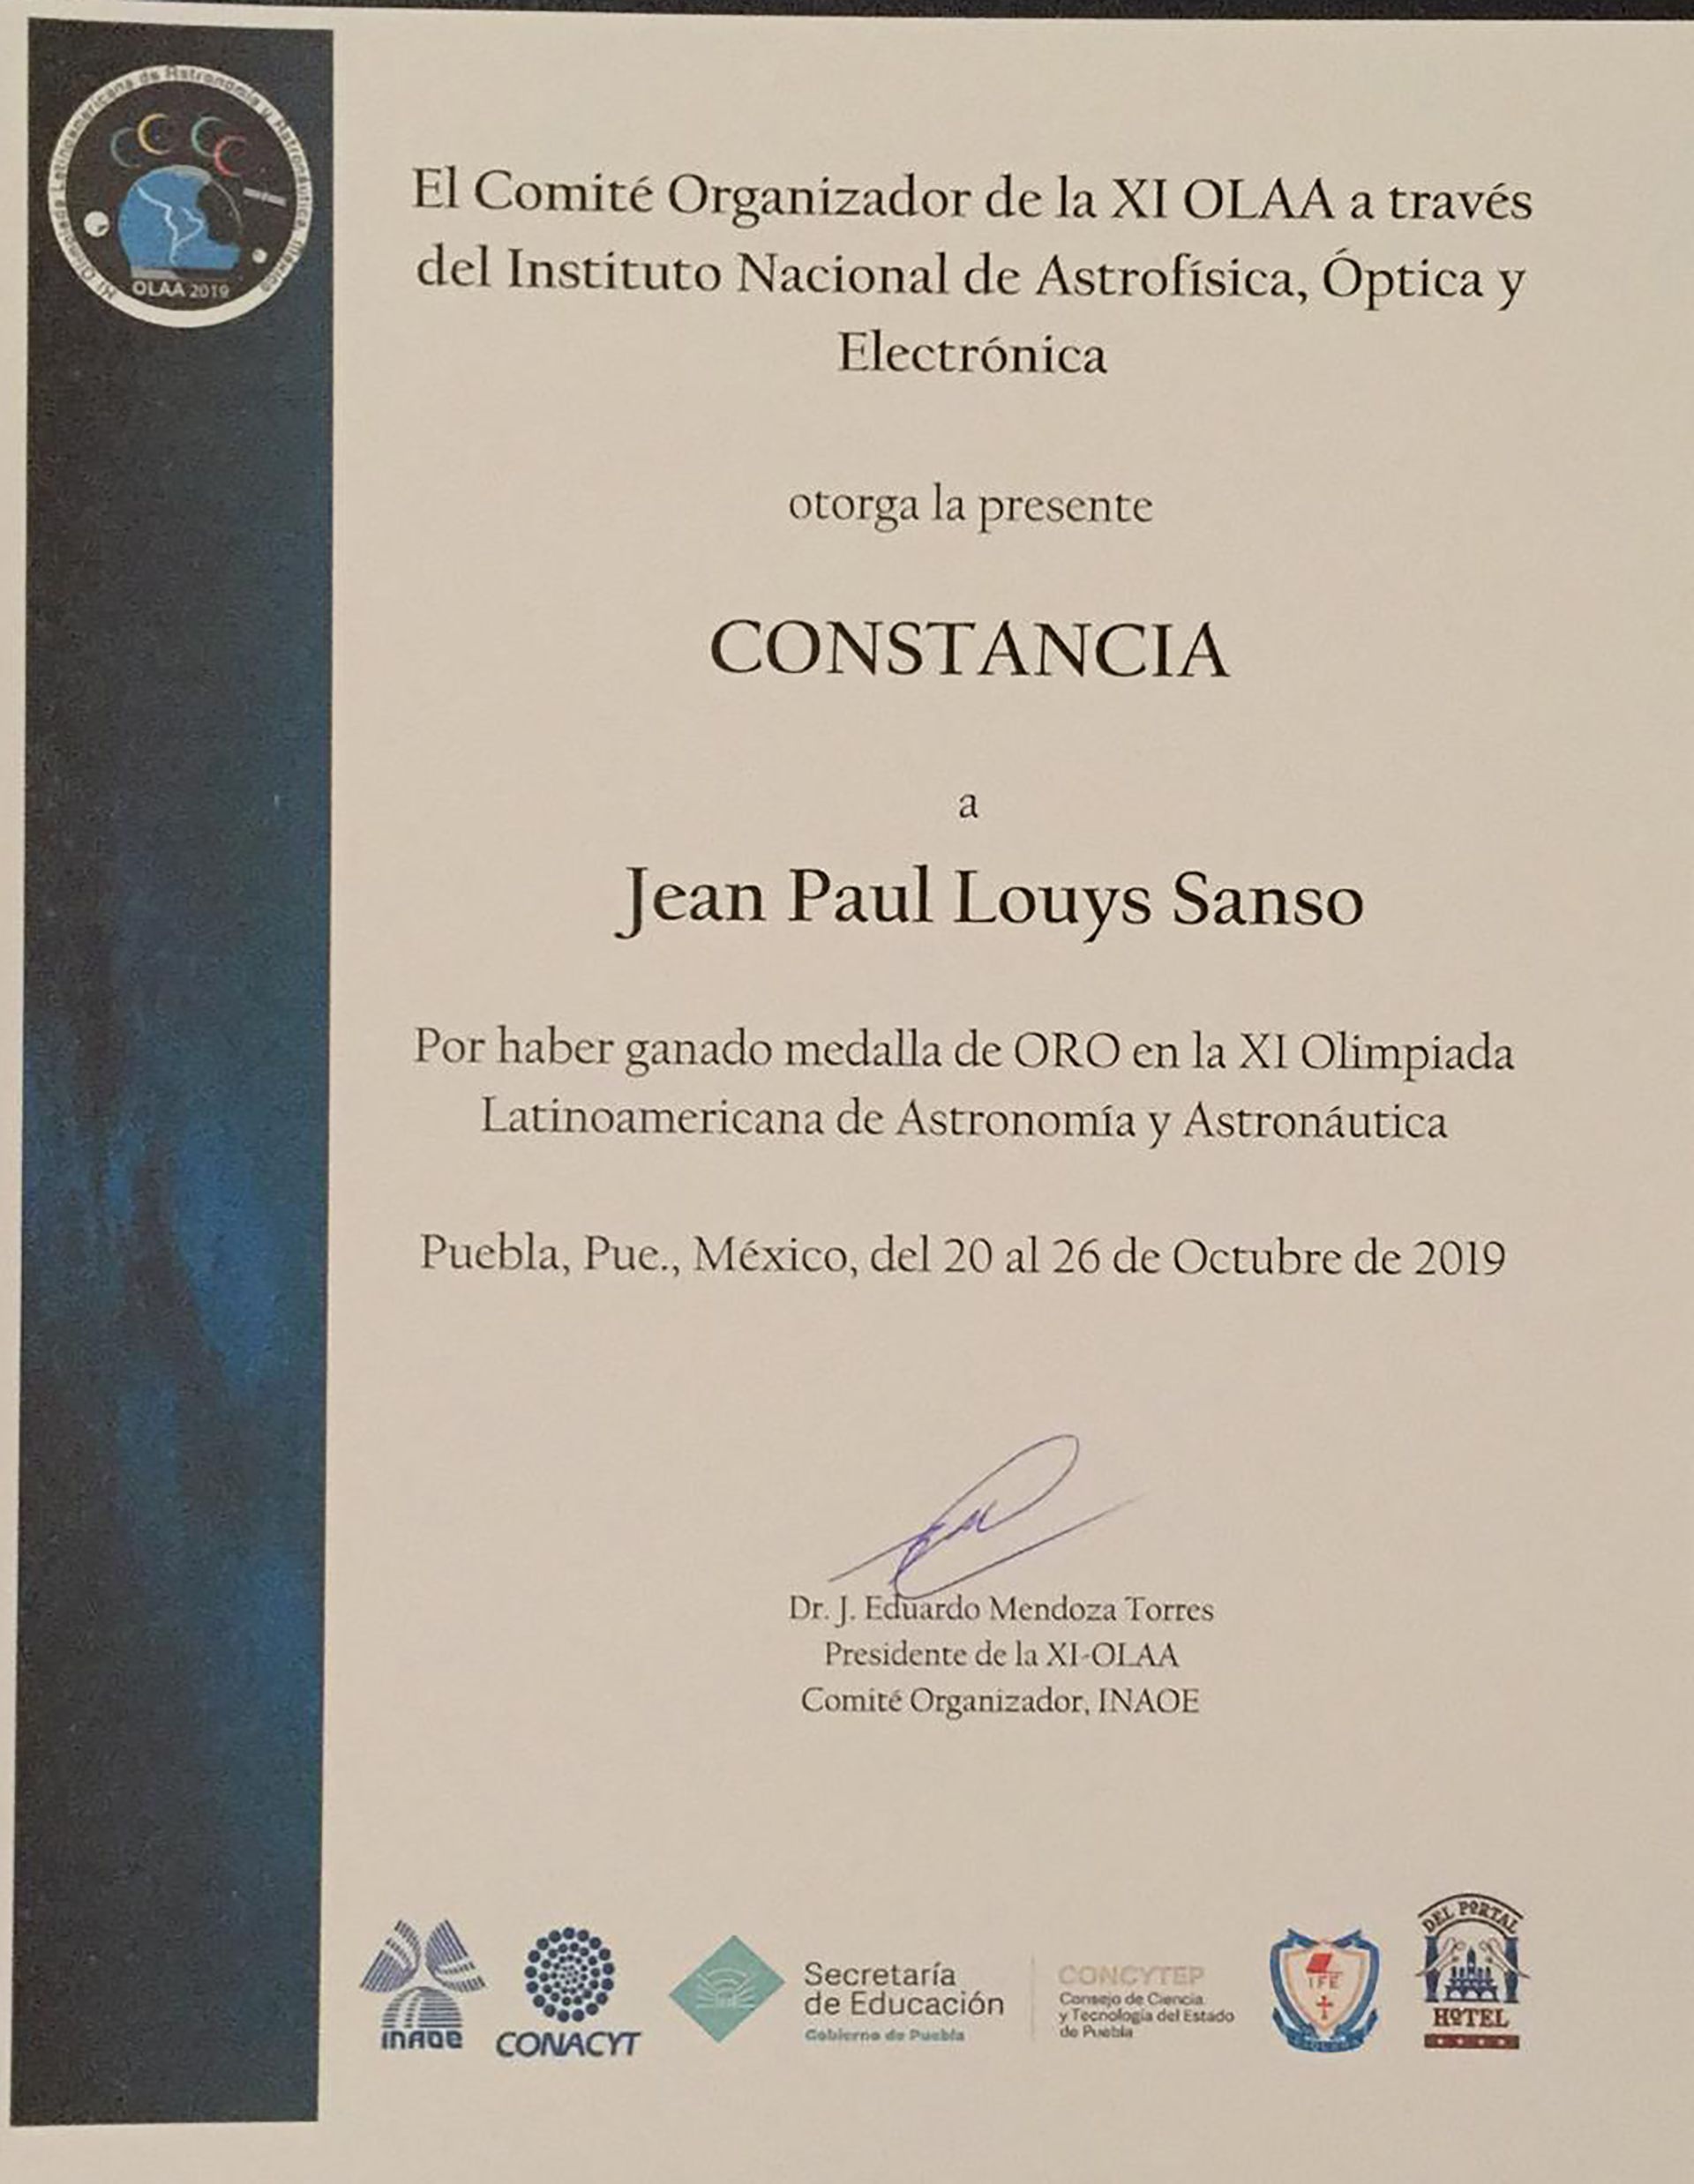 El certificado obtenido por Jean Paul Louys